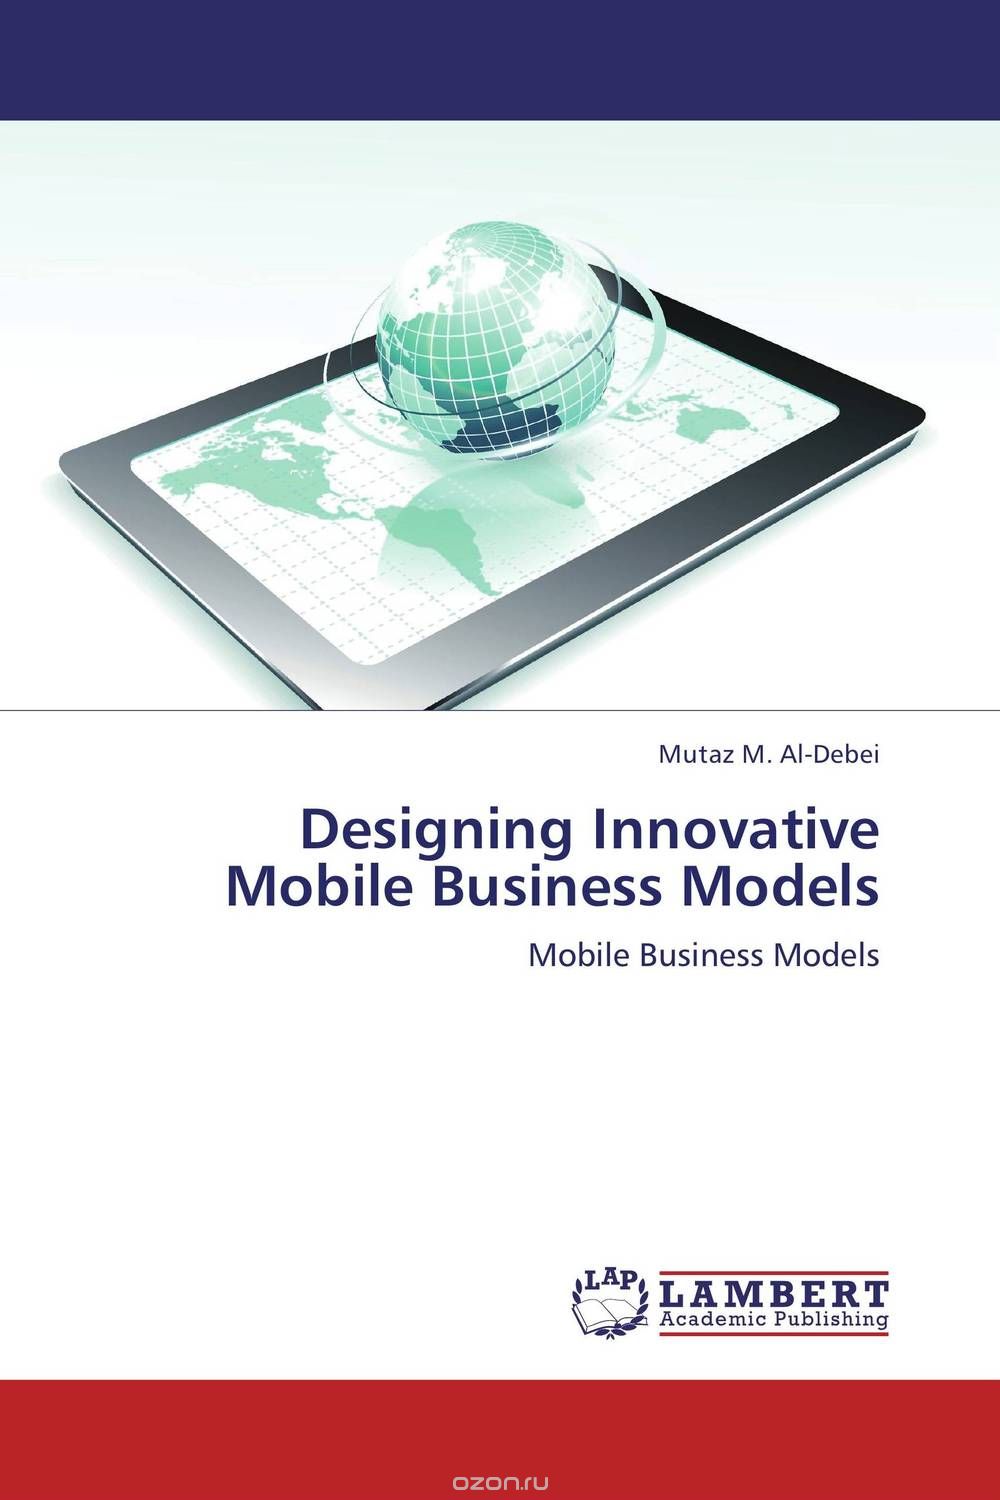 Скачать книгу "Designing Innovative Mobile Business Models"